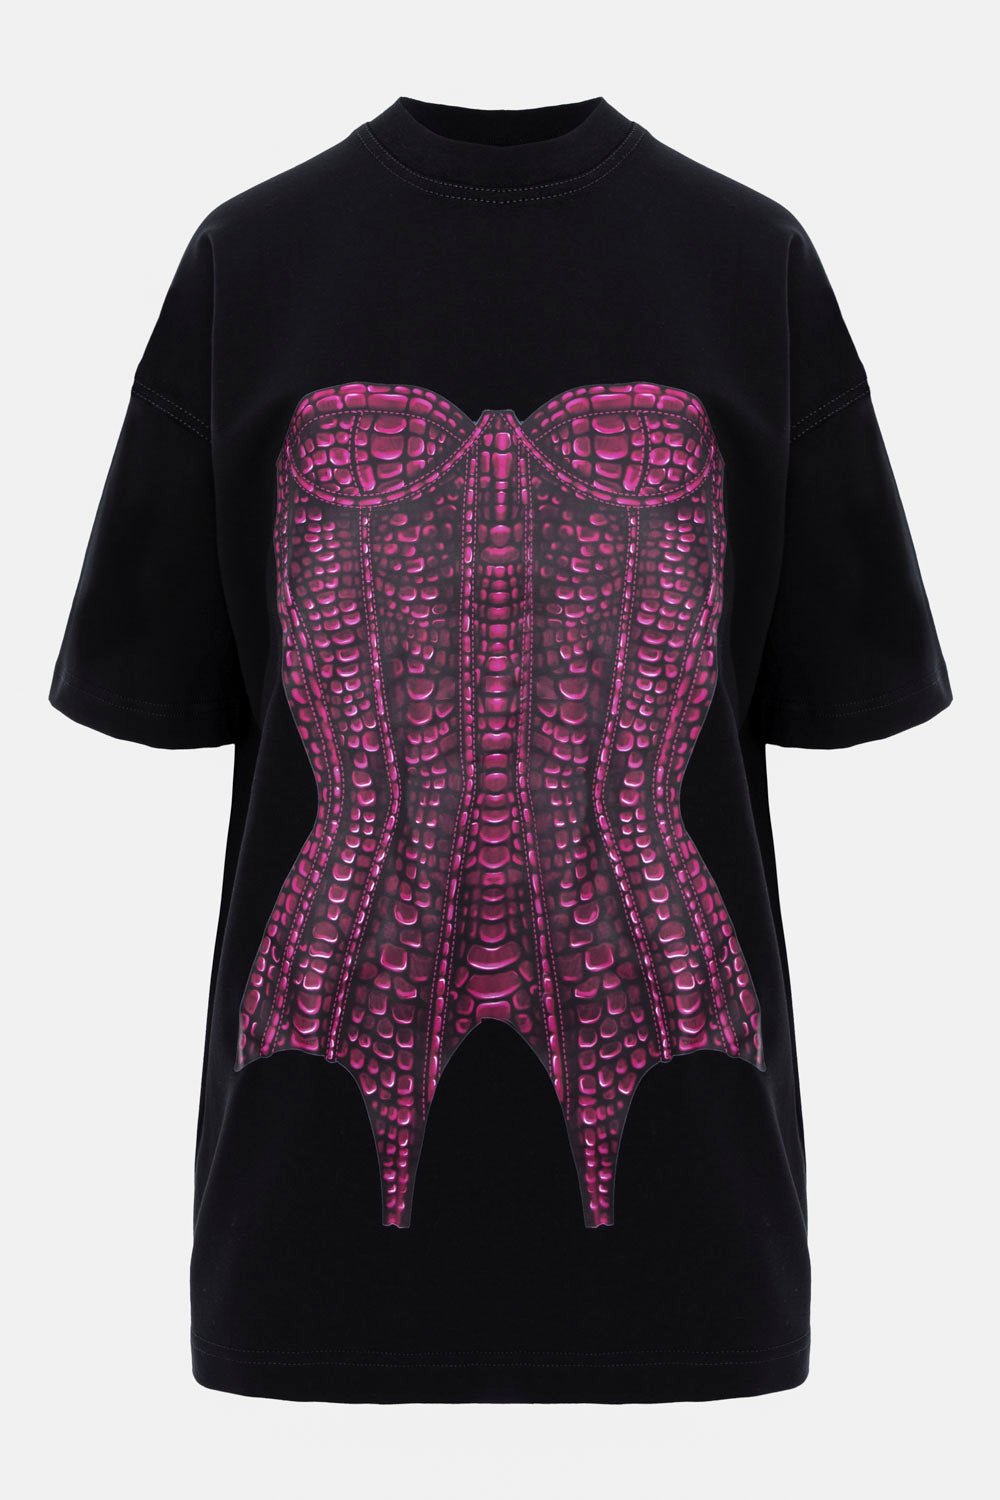 Rochie-tricou damă, neagră, imprimeu corset, bumbac premium, croială oversized, detalii elegante (imprimeu catifelat).